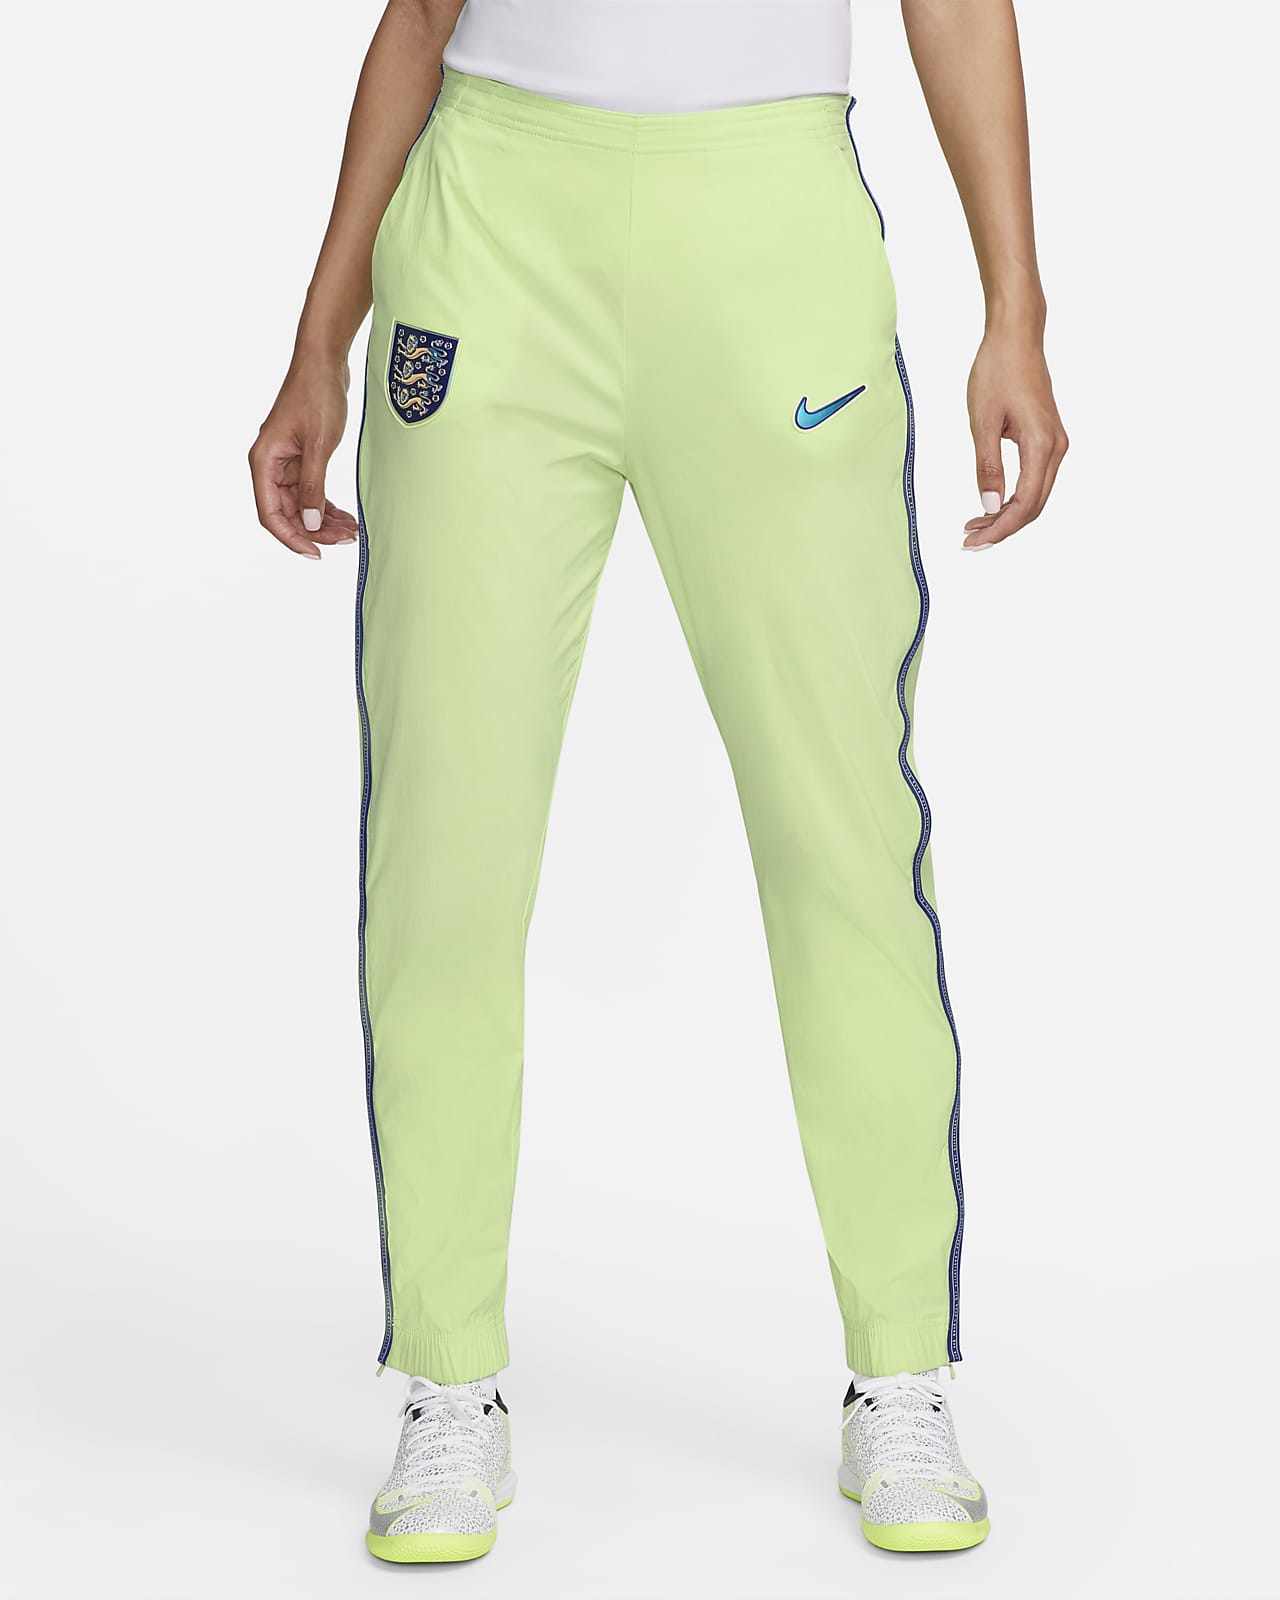 England Women's Woven Football Pants